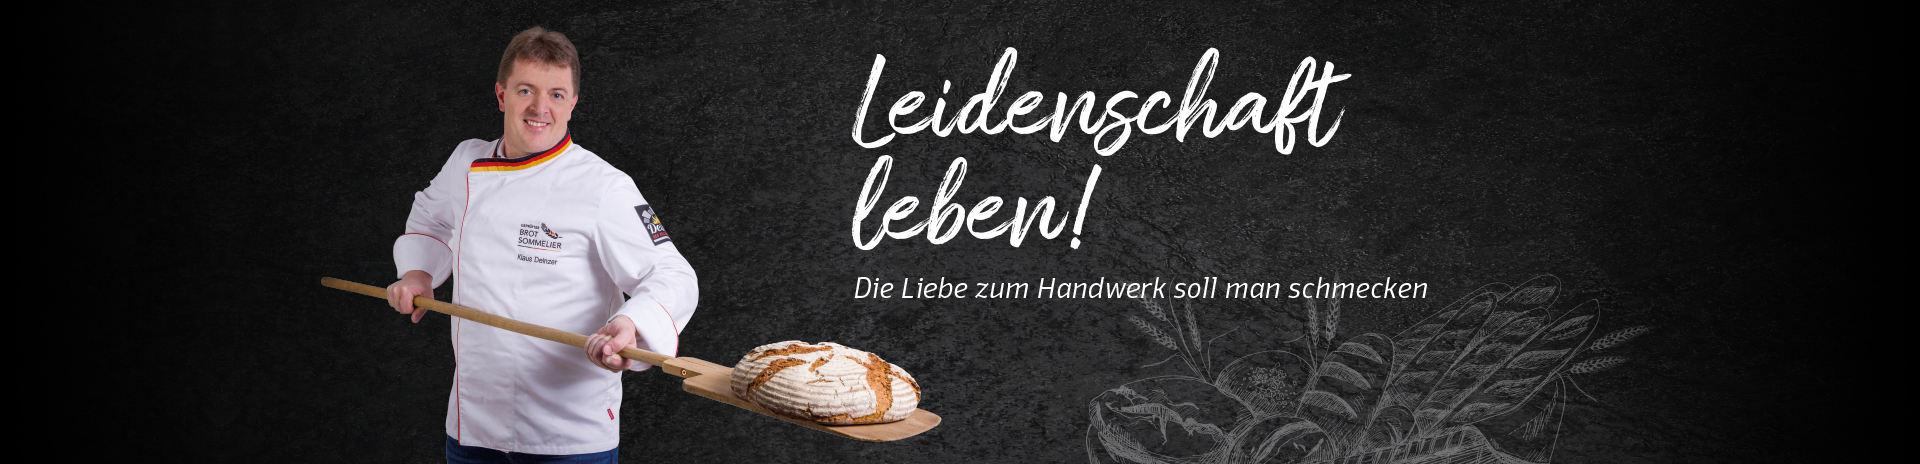 Deinzer Bäckerei - Banner